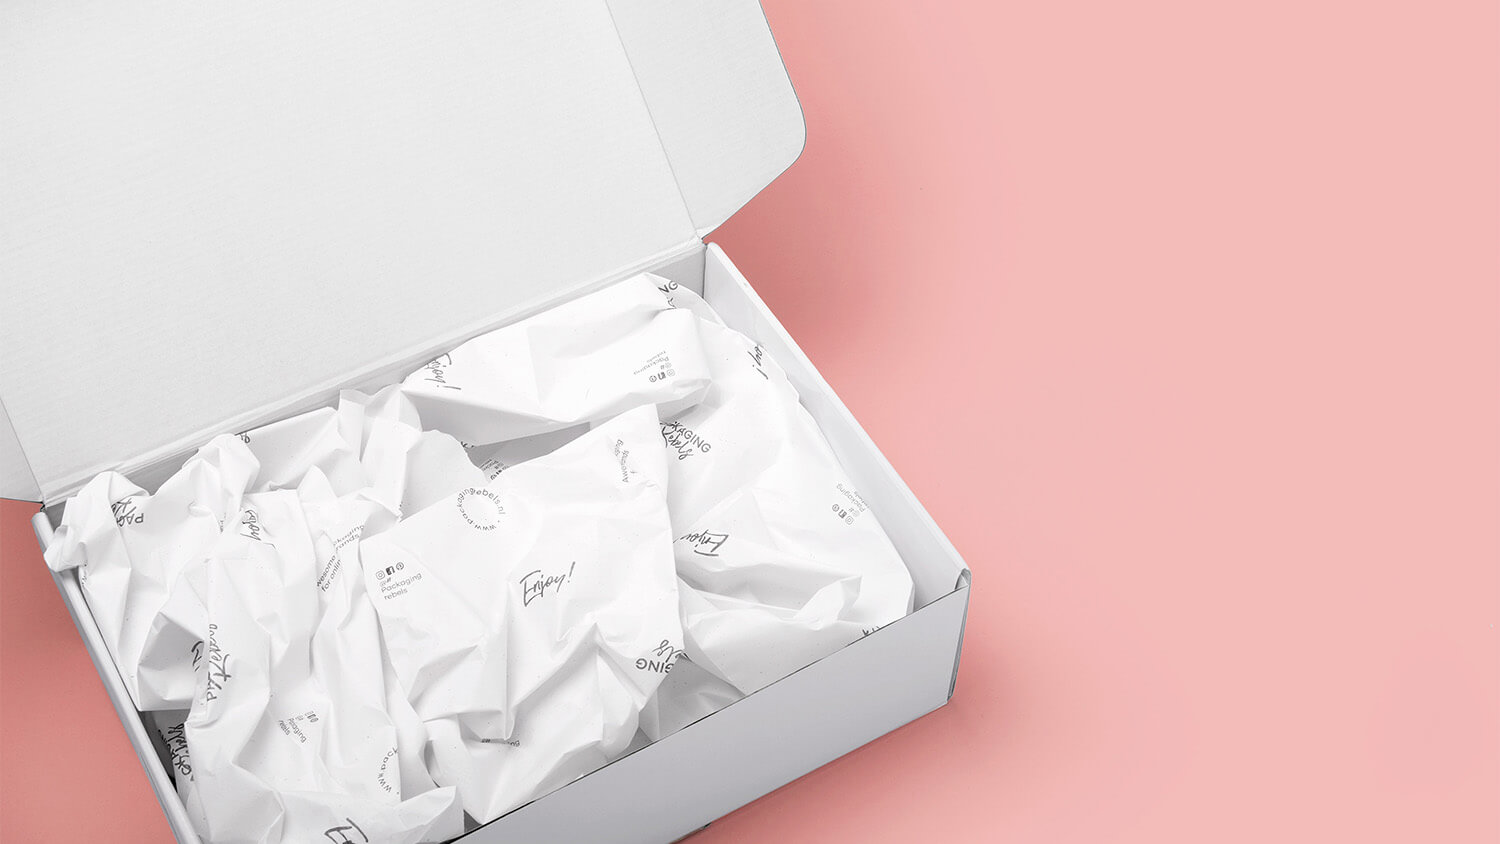 Bedrukt opvulpapier gemaakt van papier met suikerbietenpulp: Een duurzaam opvulmateriaal